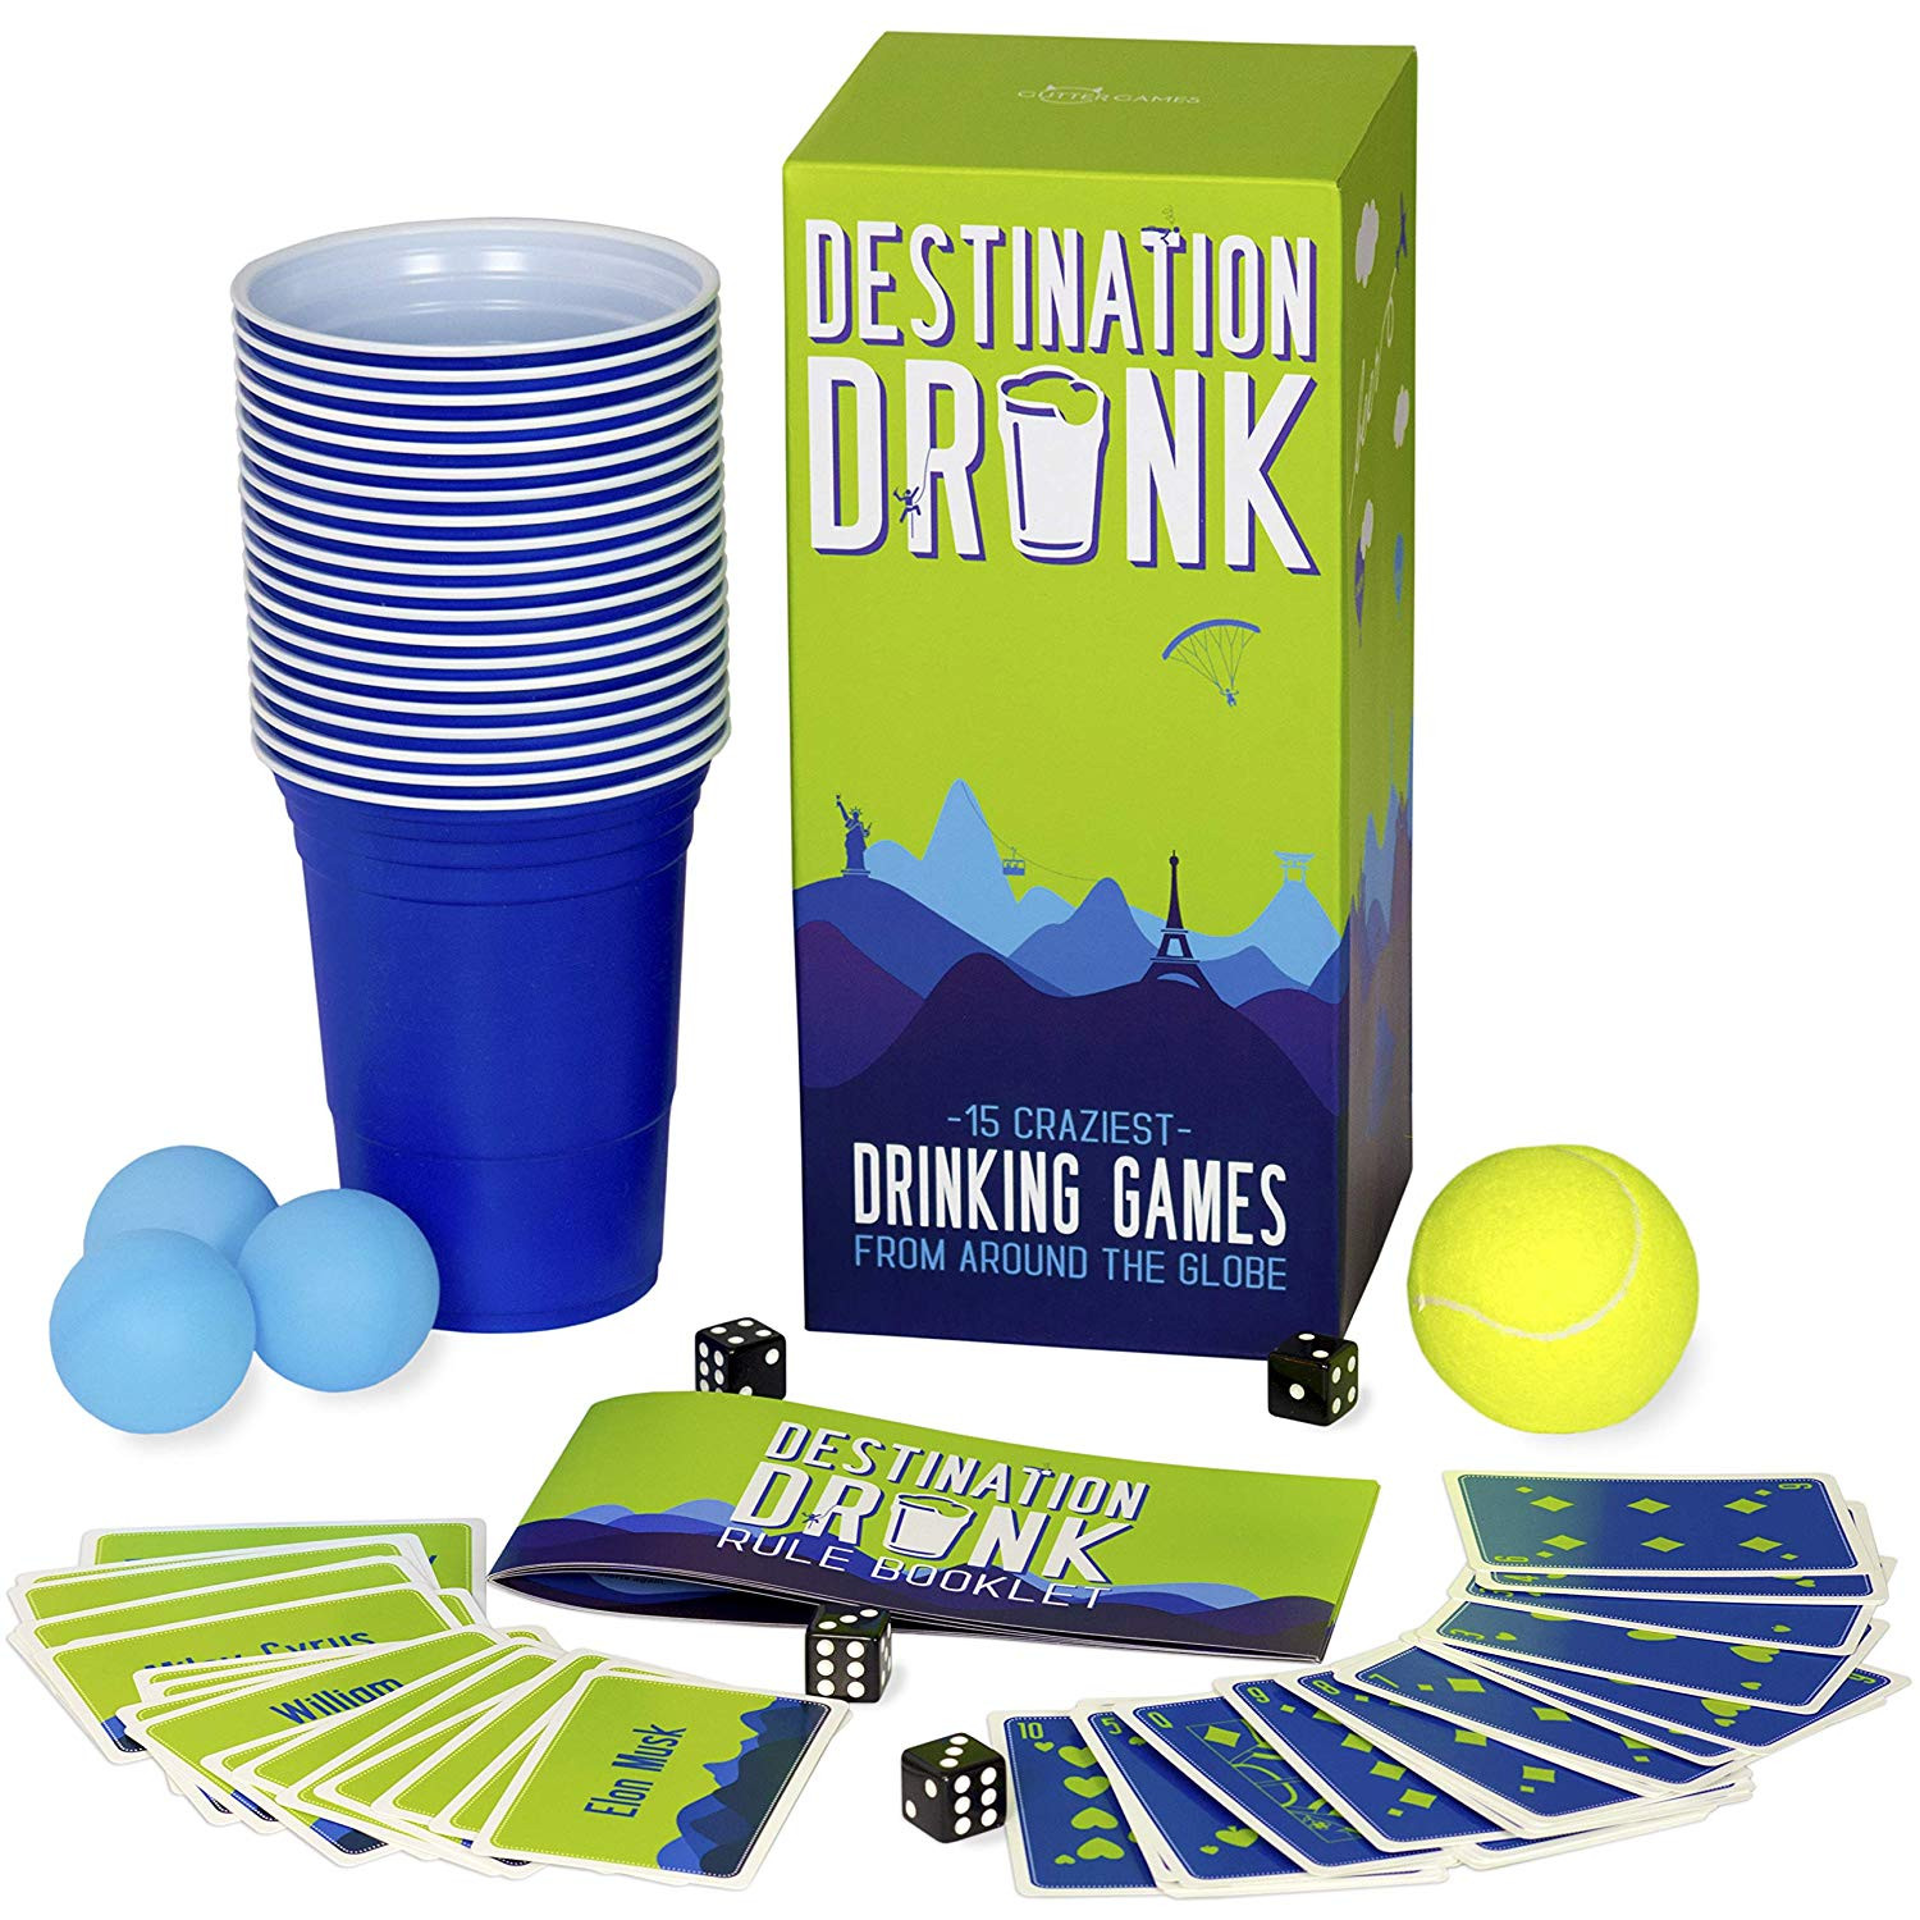 Destination Drunk - 15 Craziest Drinking Games from Around the Globe